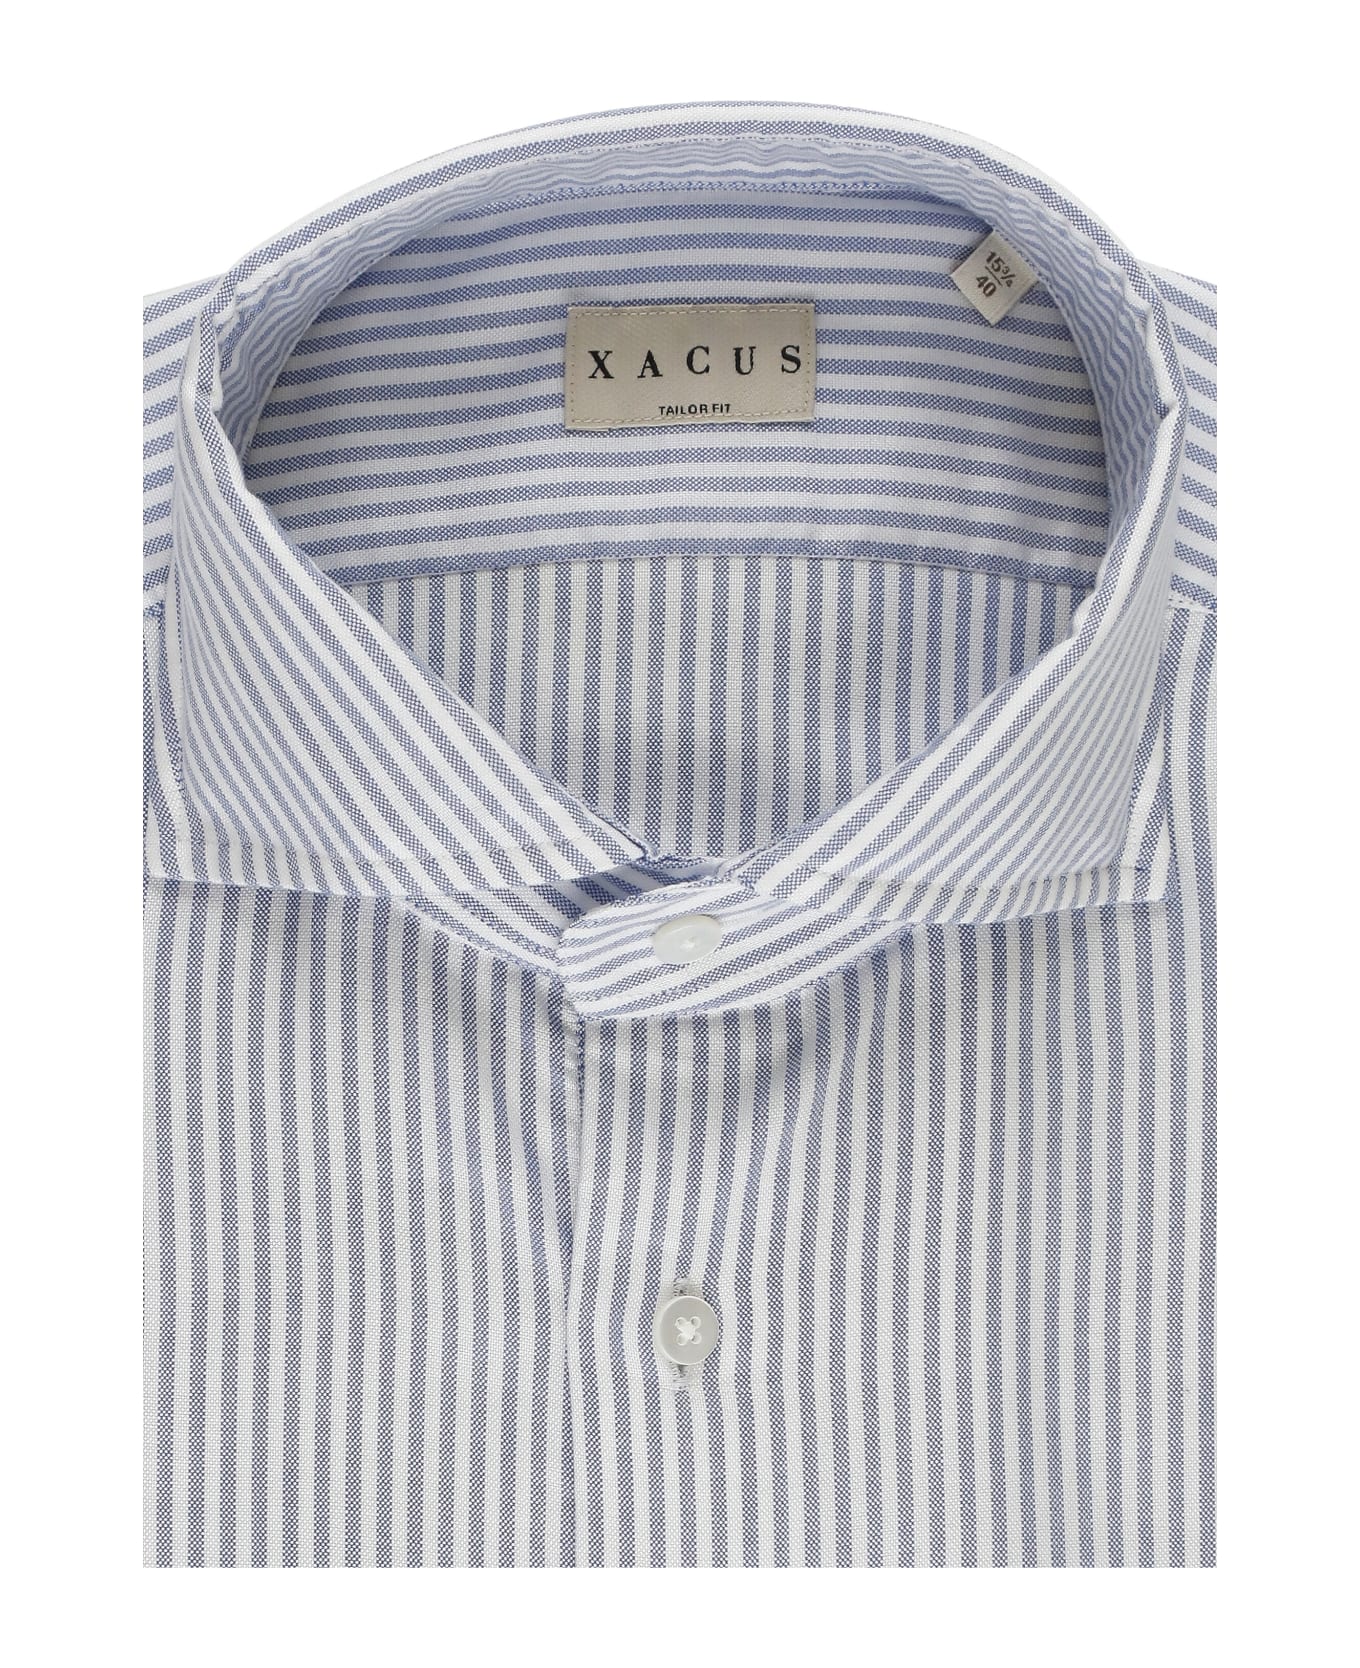 Xacus Striped Shirt - Light Blue